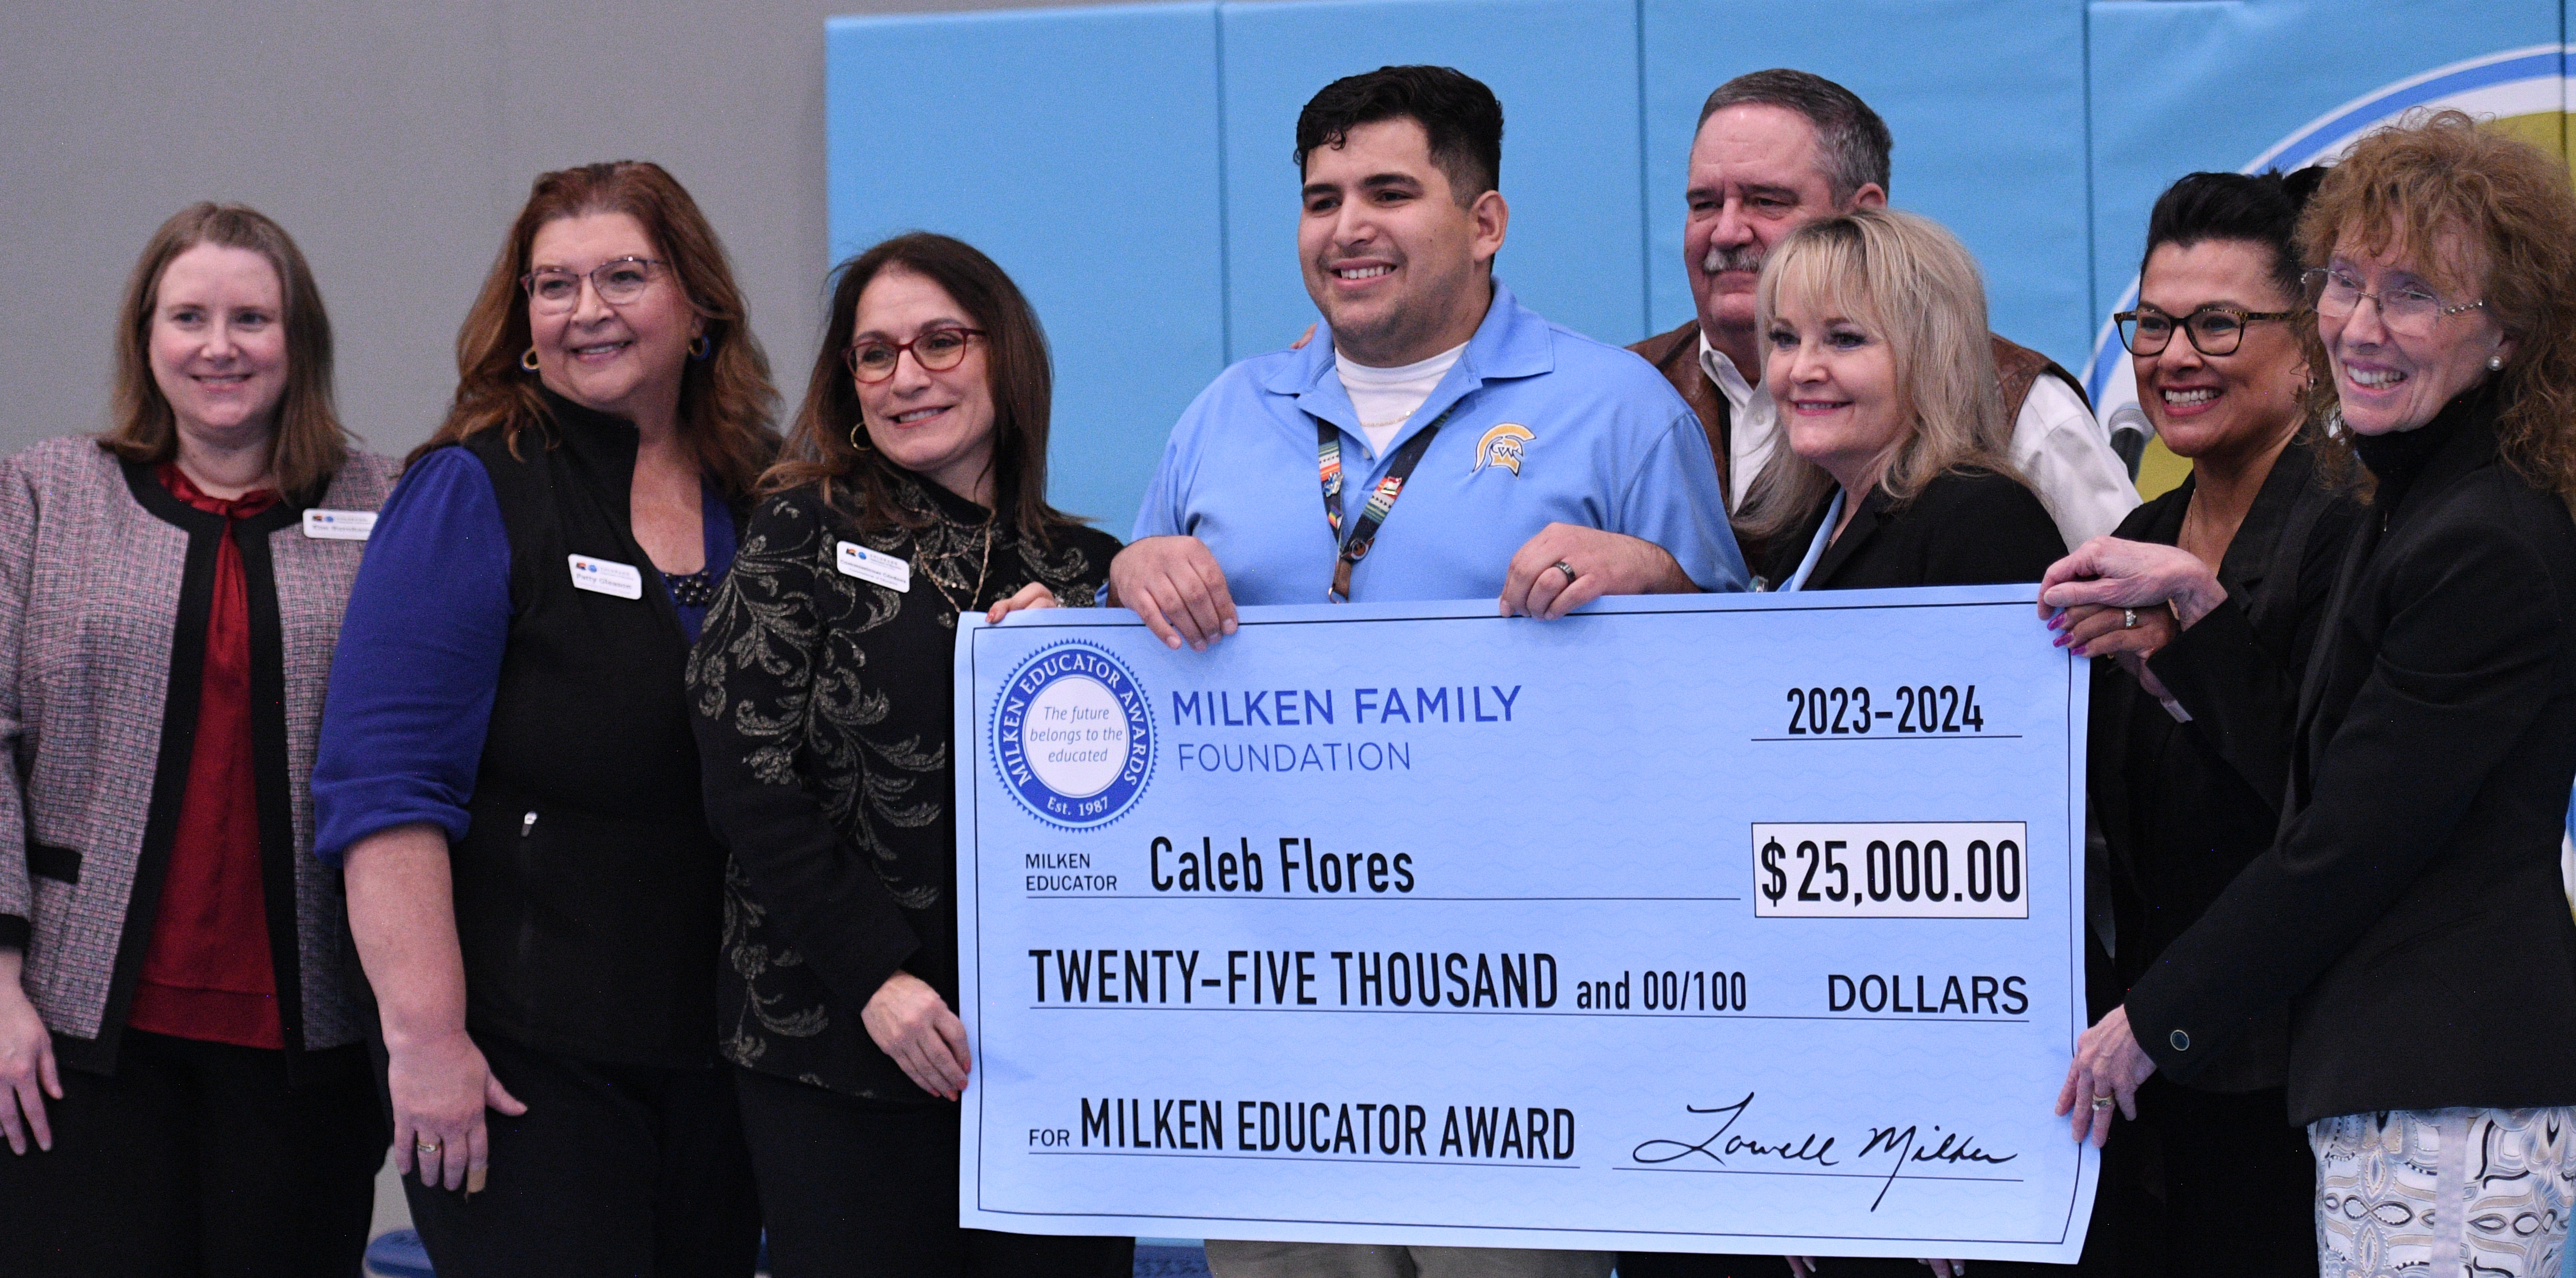 Caleb Flores junto con miembros del premio Milken y autoridades escolares deteniendo un gran cheque de 25 mil dolares